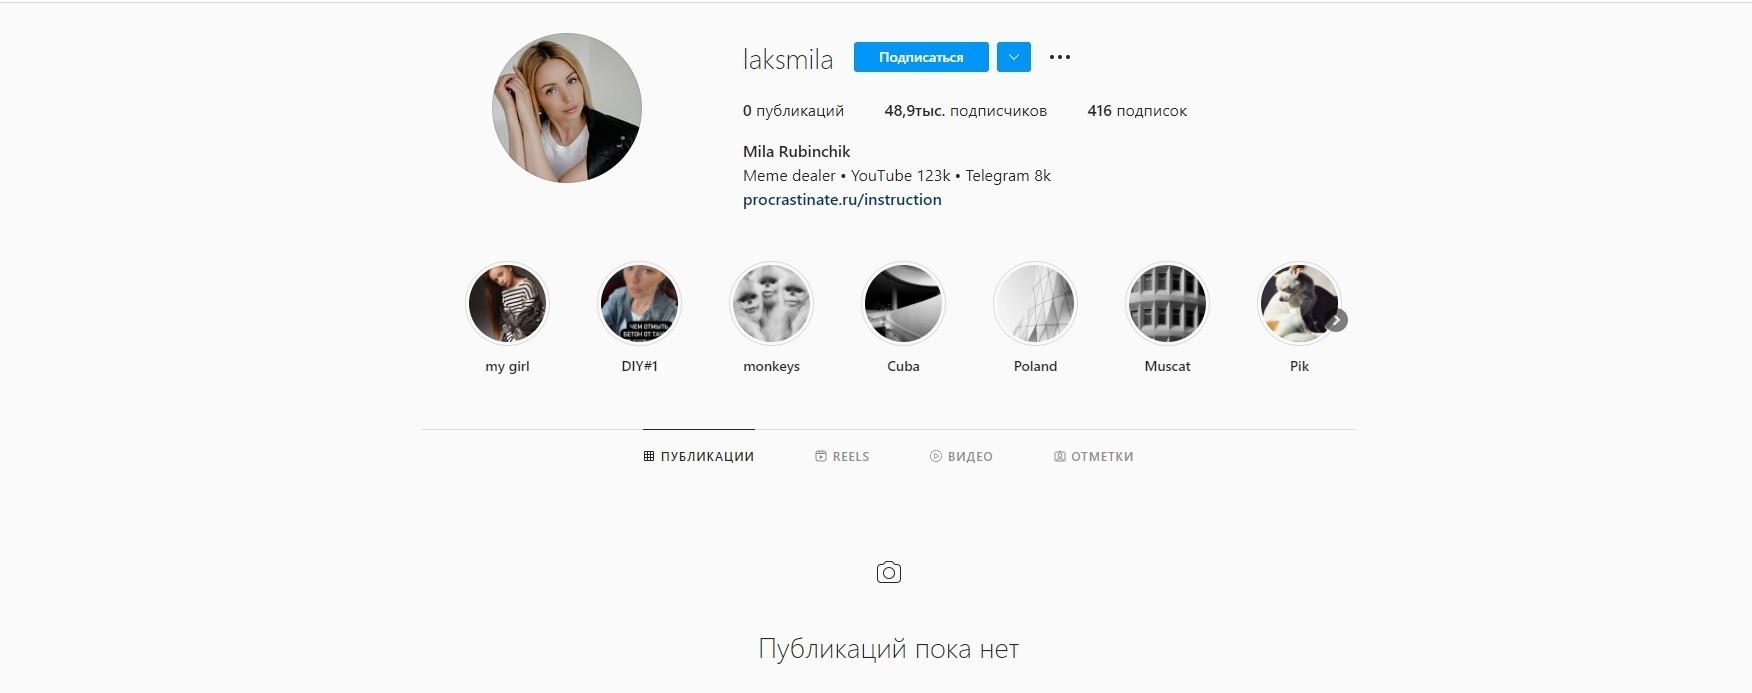 Вдова Зеленского после его внезапной смерти удалила все фото в Instagram